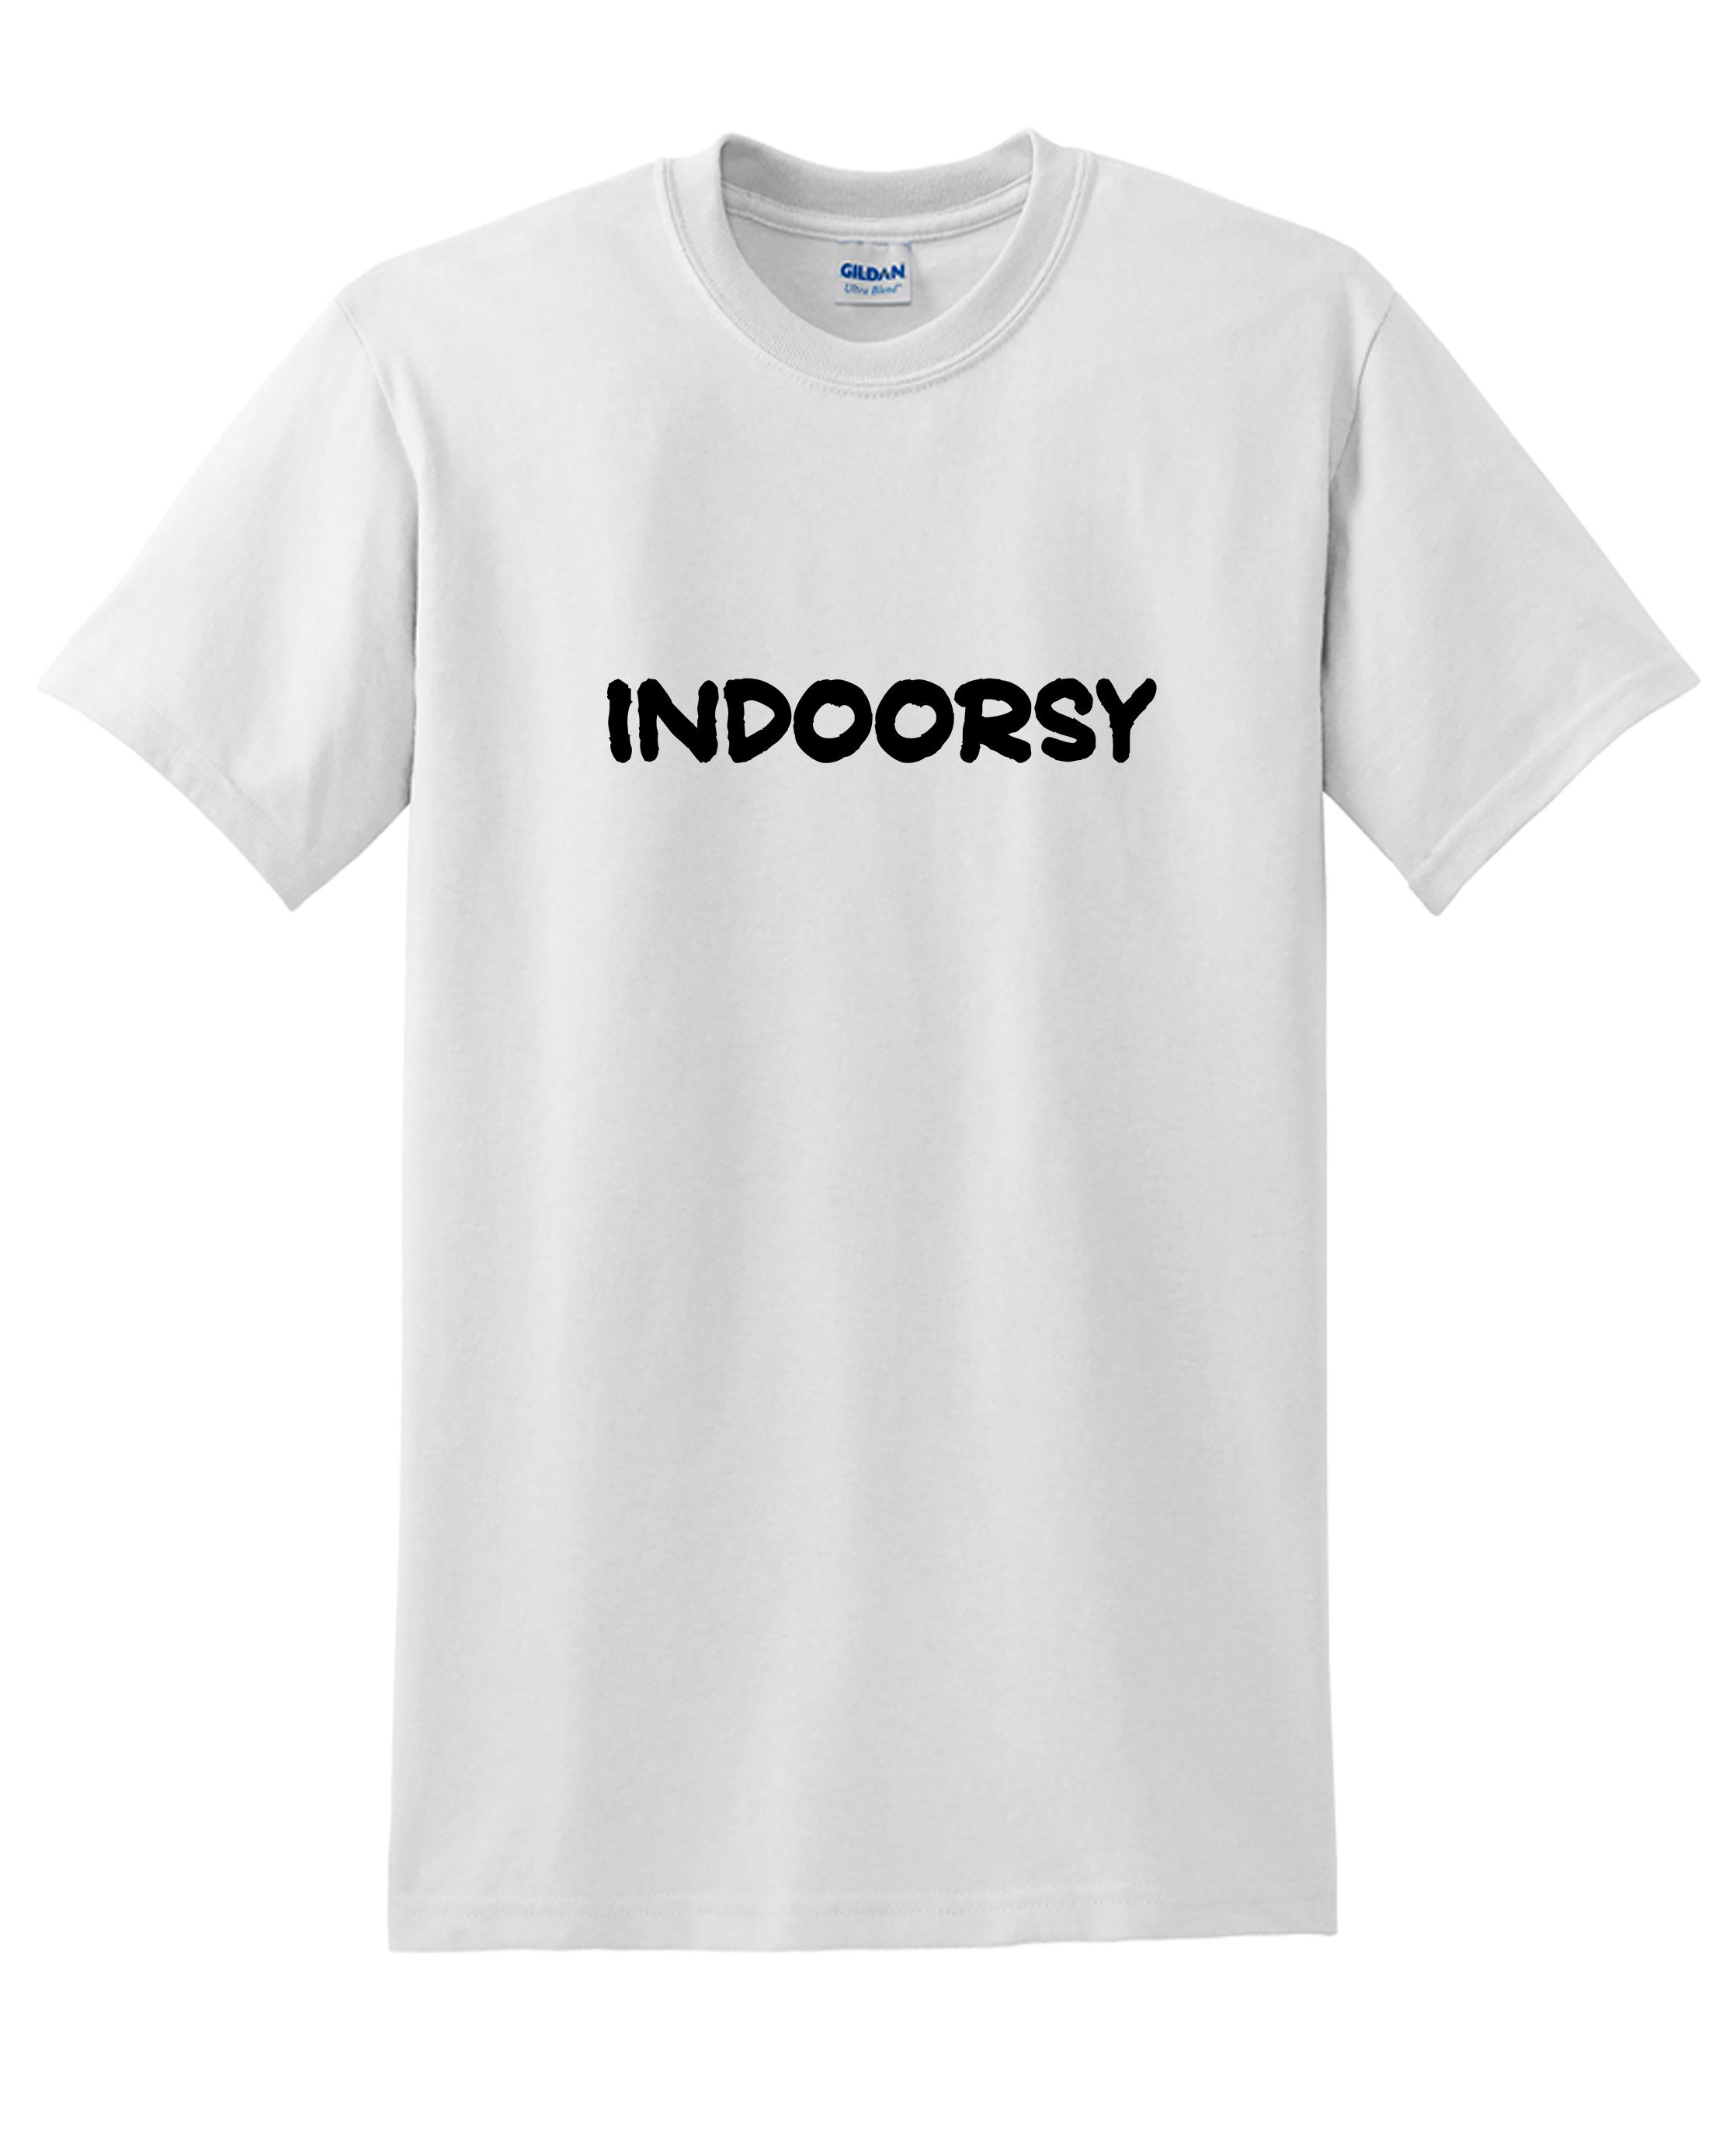 Indoorsy (Mens T-Shirt)